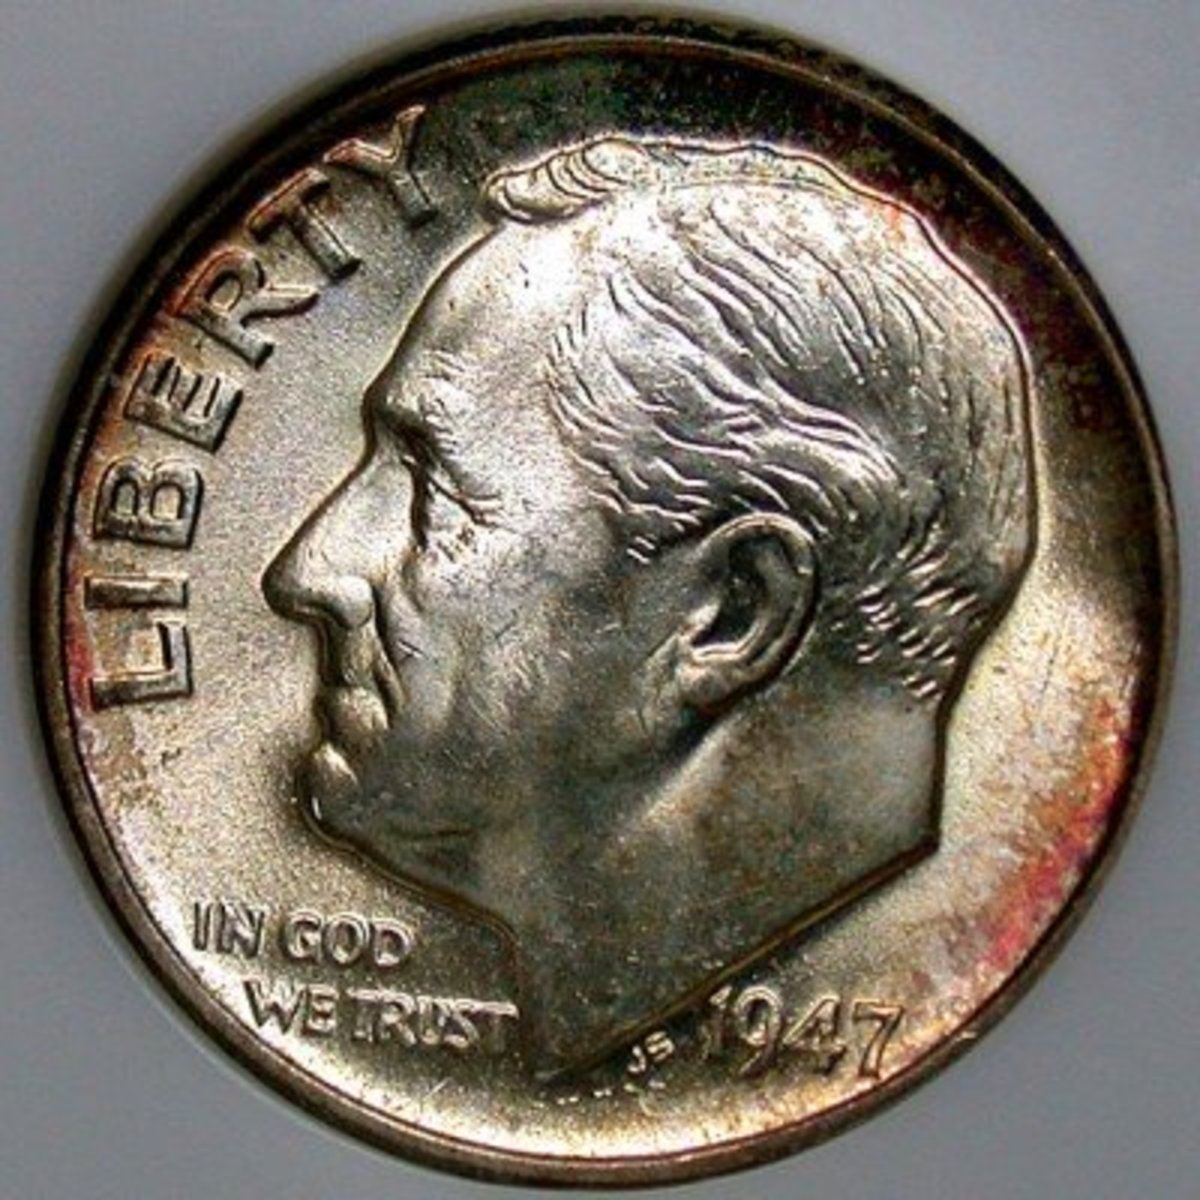 1968 d penny no mint mark